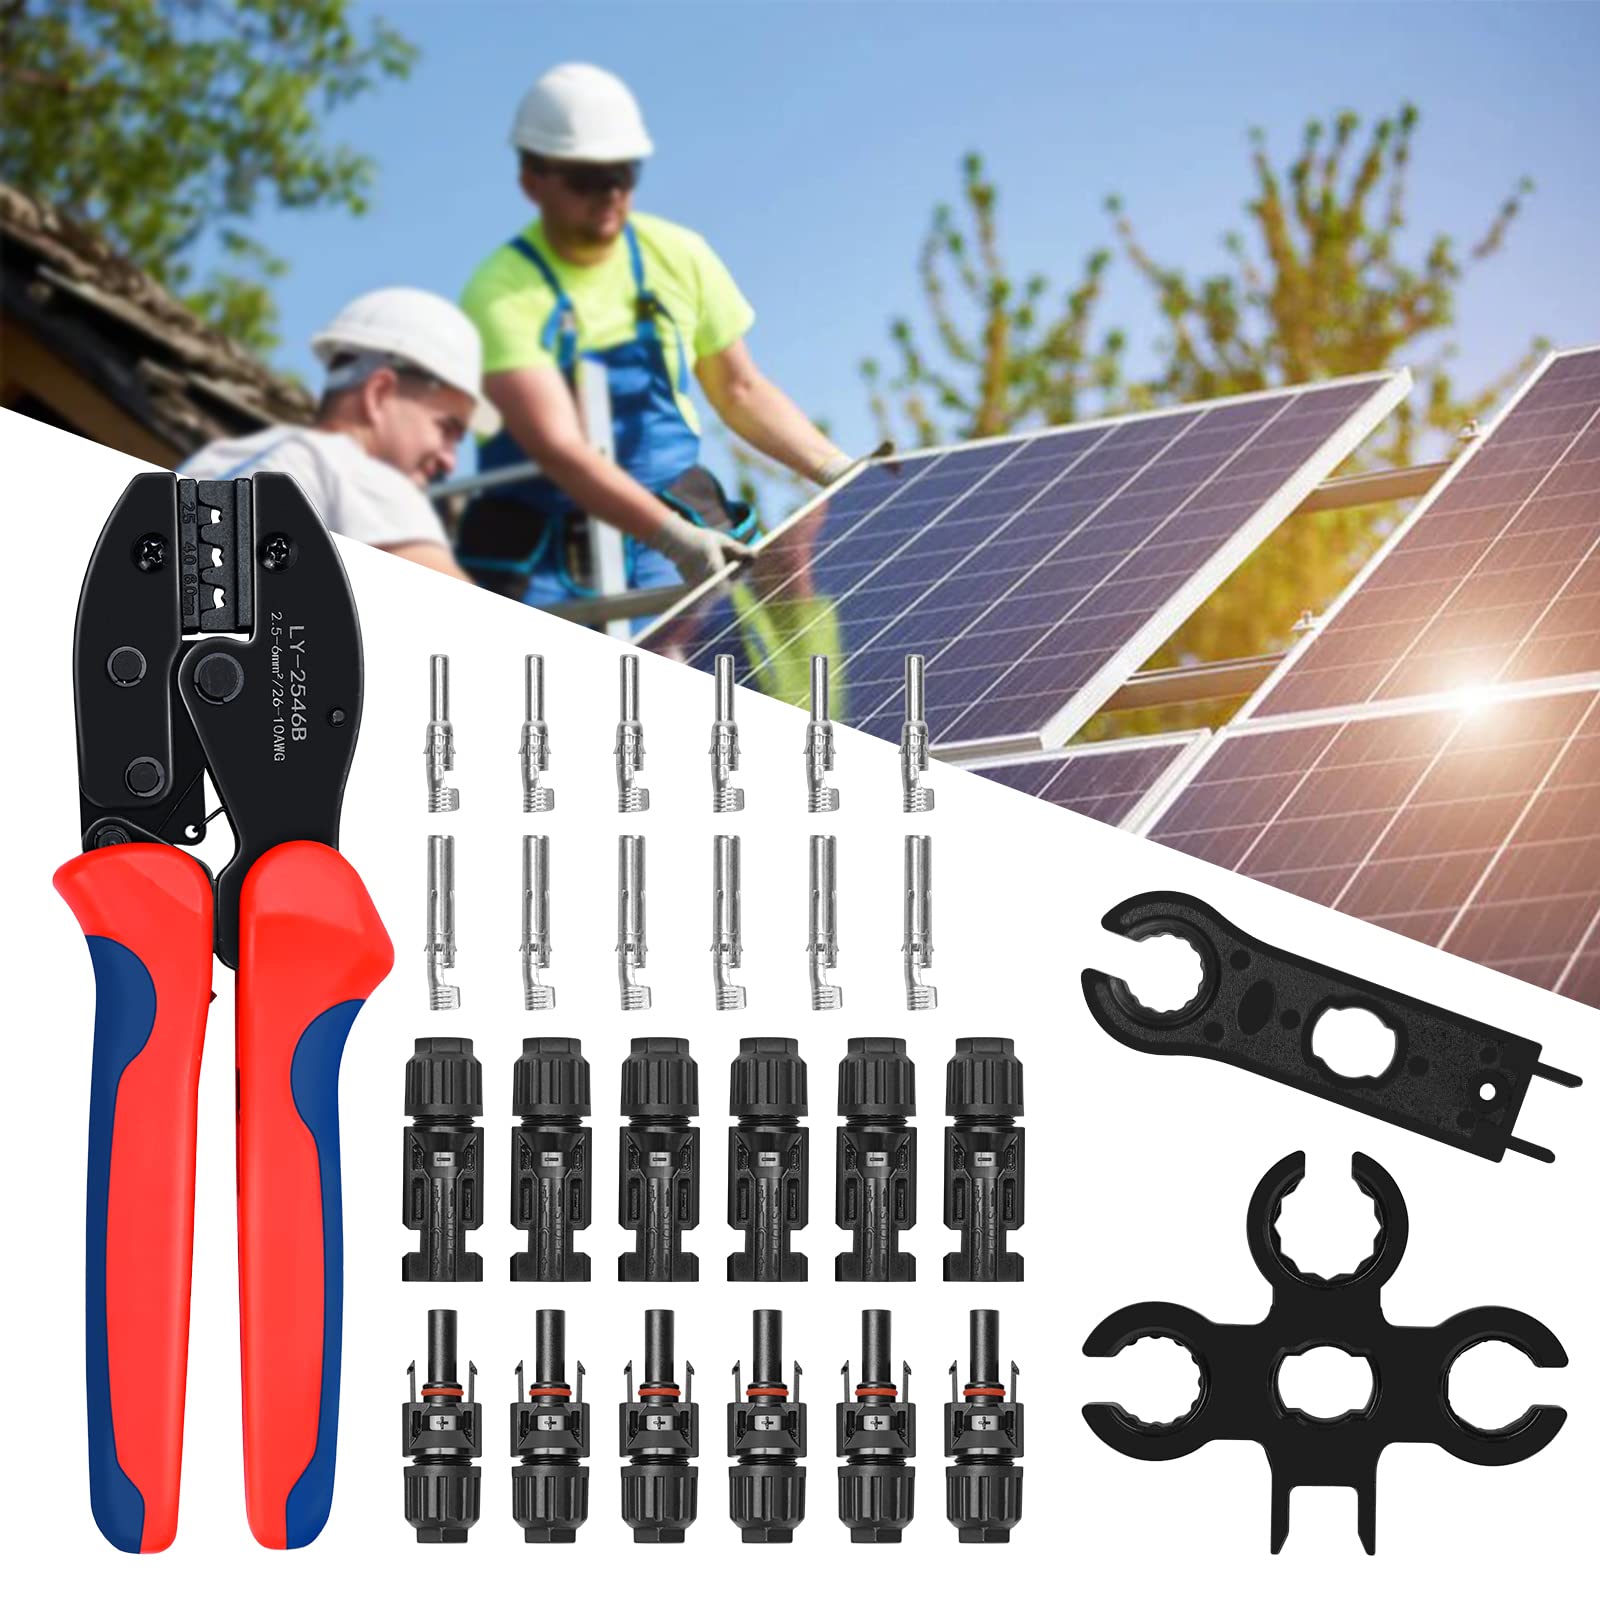 Bluesun Solar Crimpzangenset für 2,5/4/6mm2 Solarleitungen | Komplettes Werkzeugset für Solarinstallationen - Bluesun Solar DE